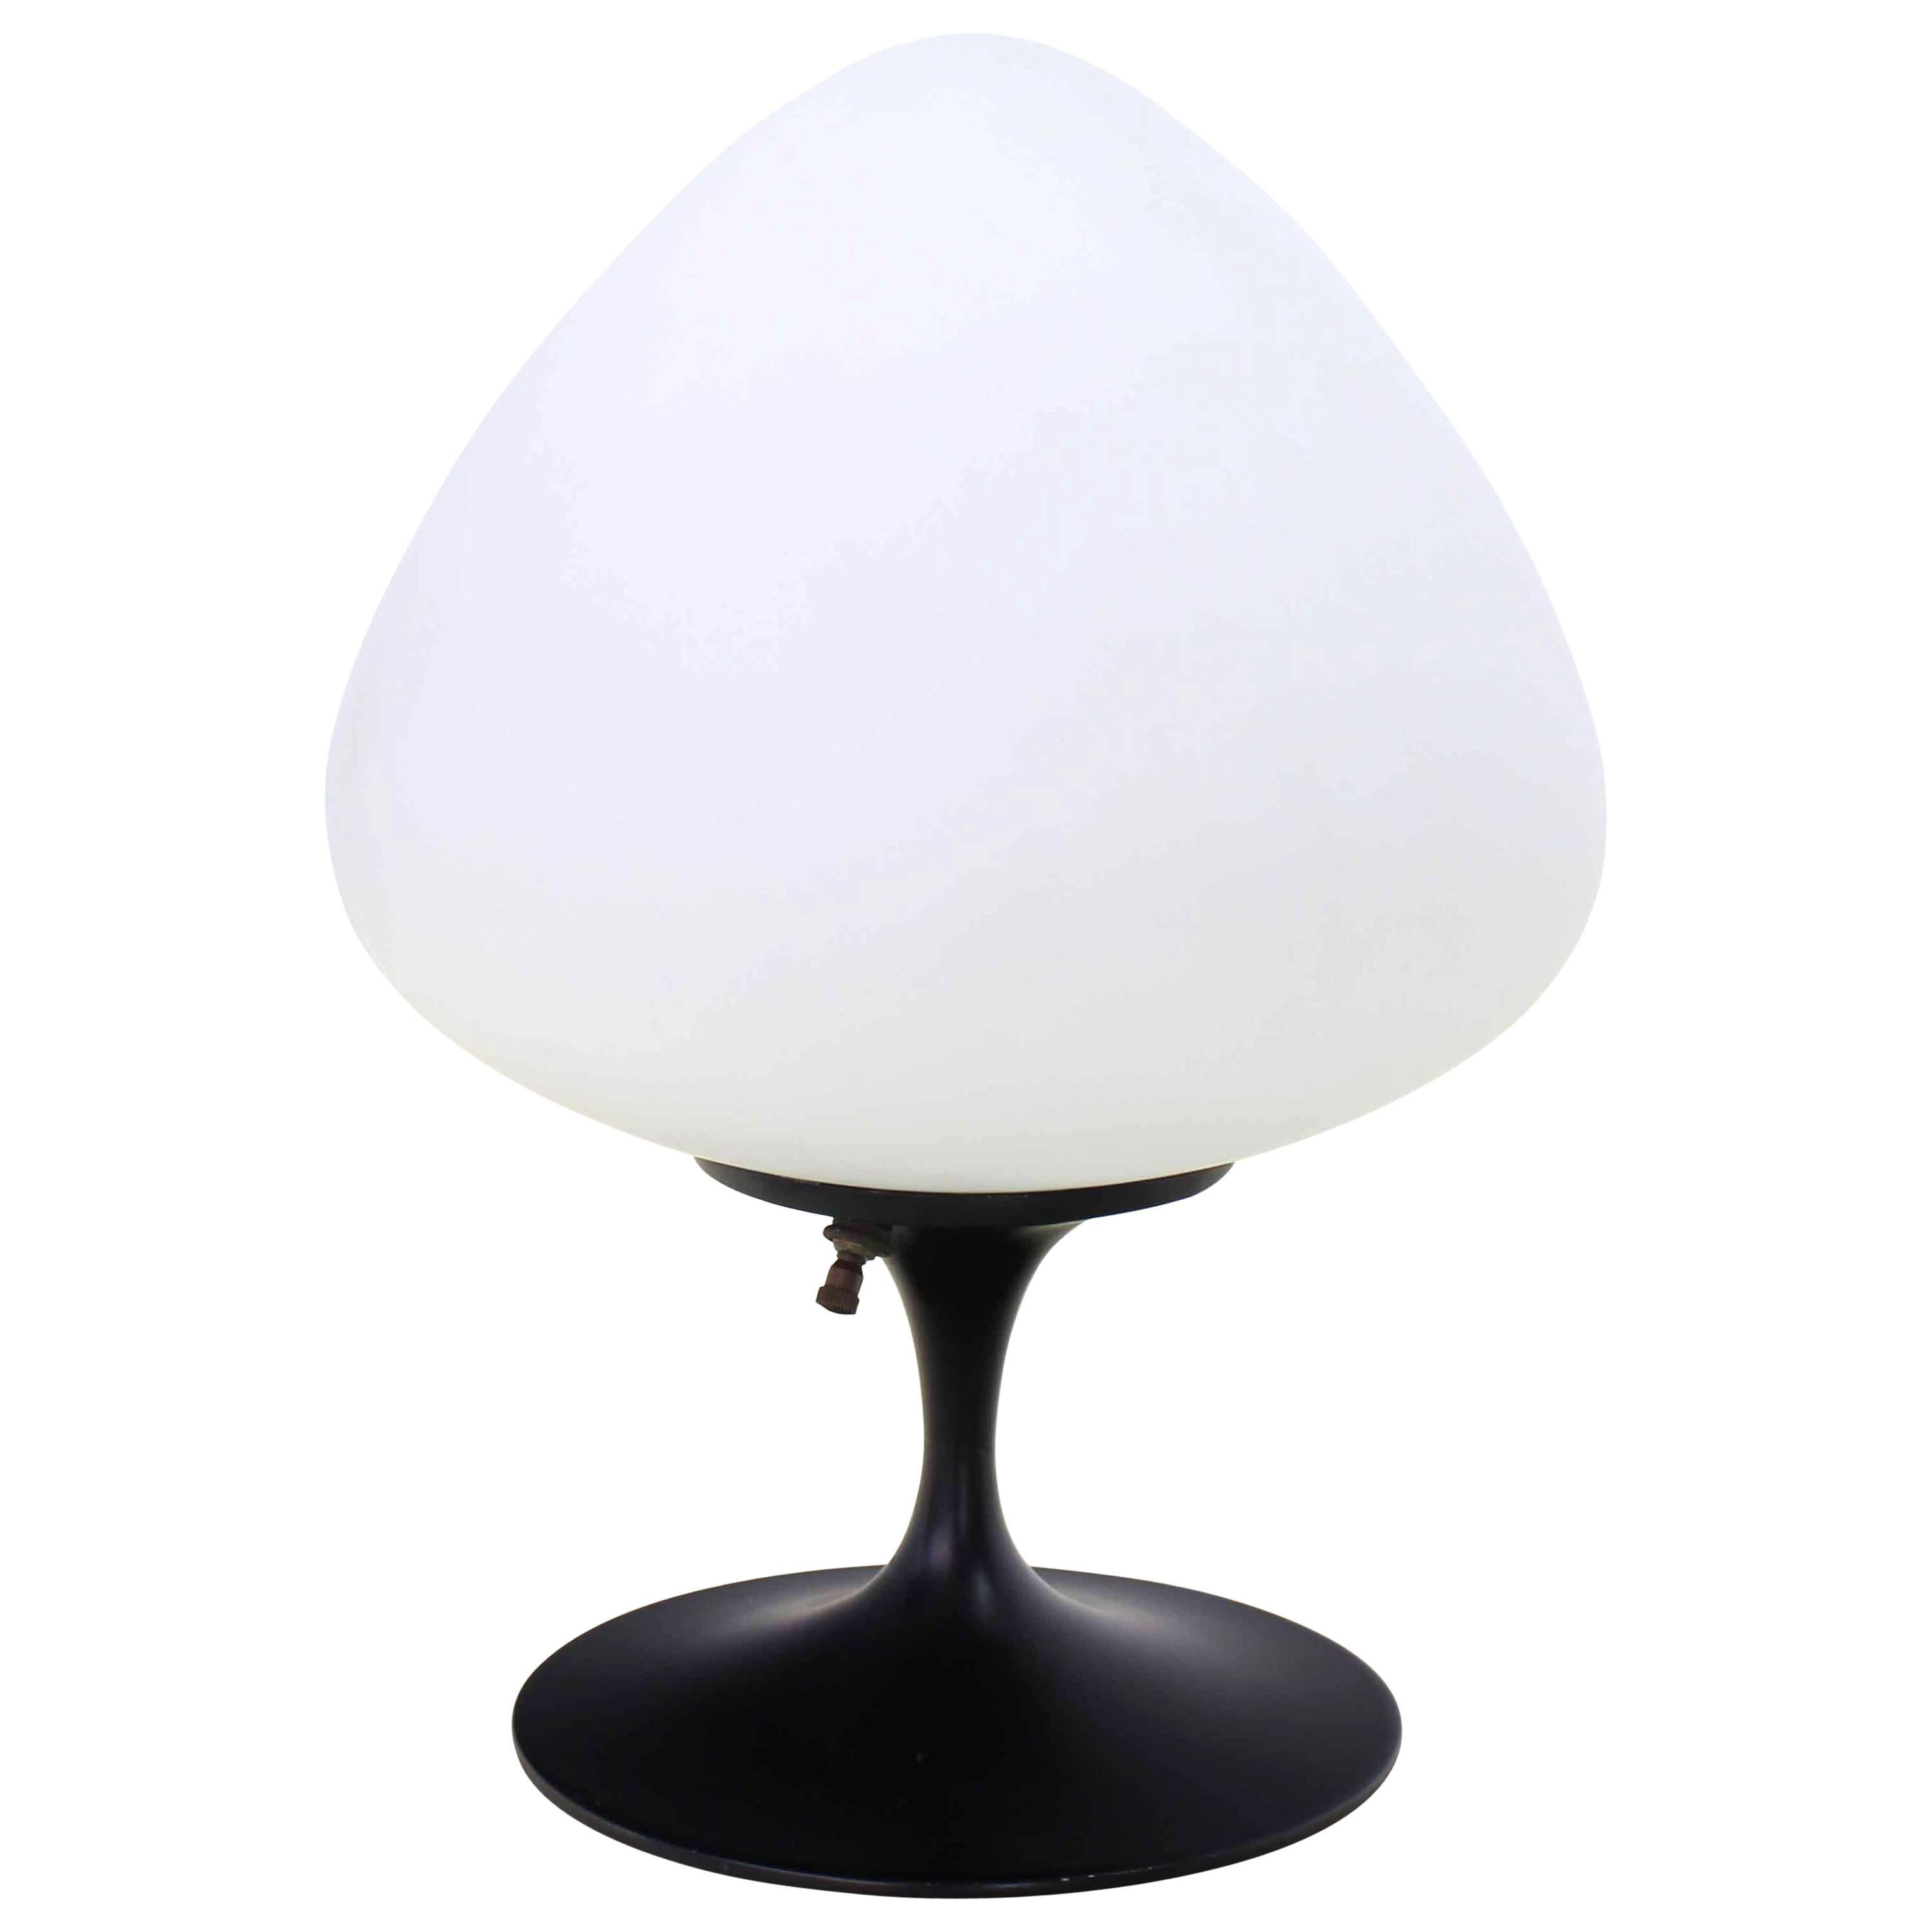 Mushroom Style Table Lamp